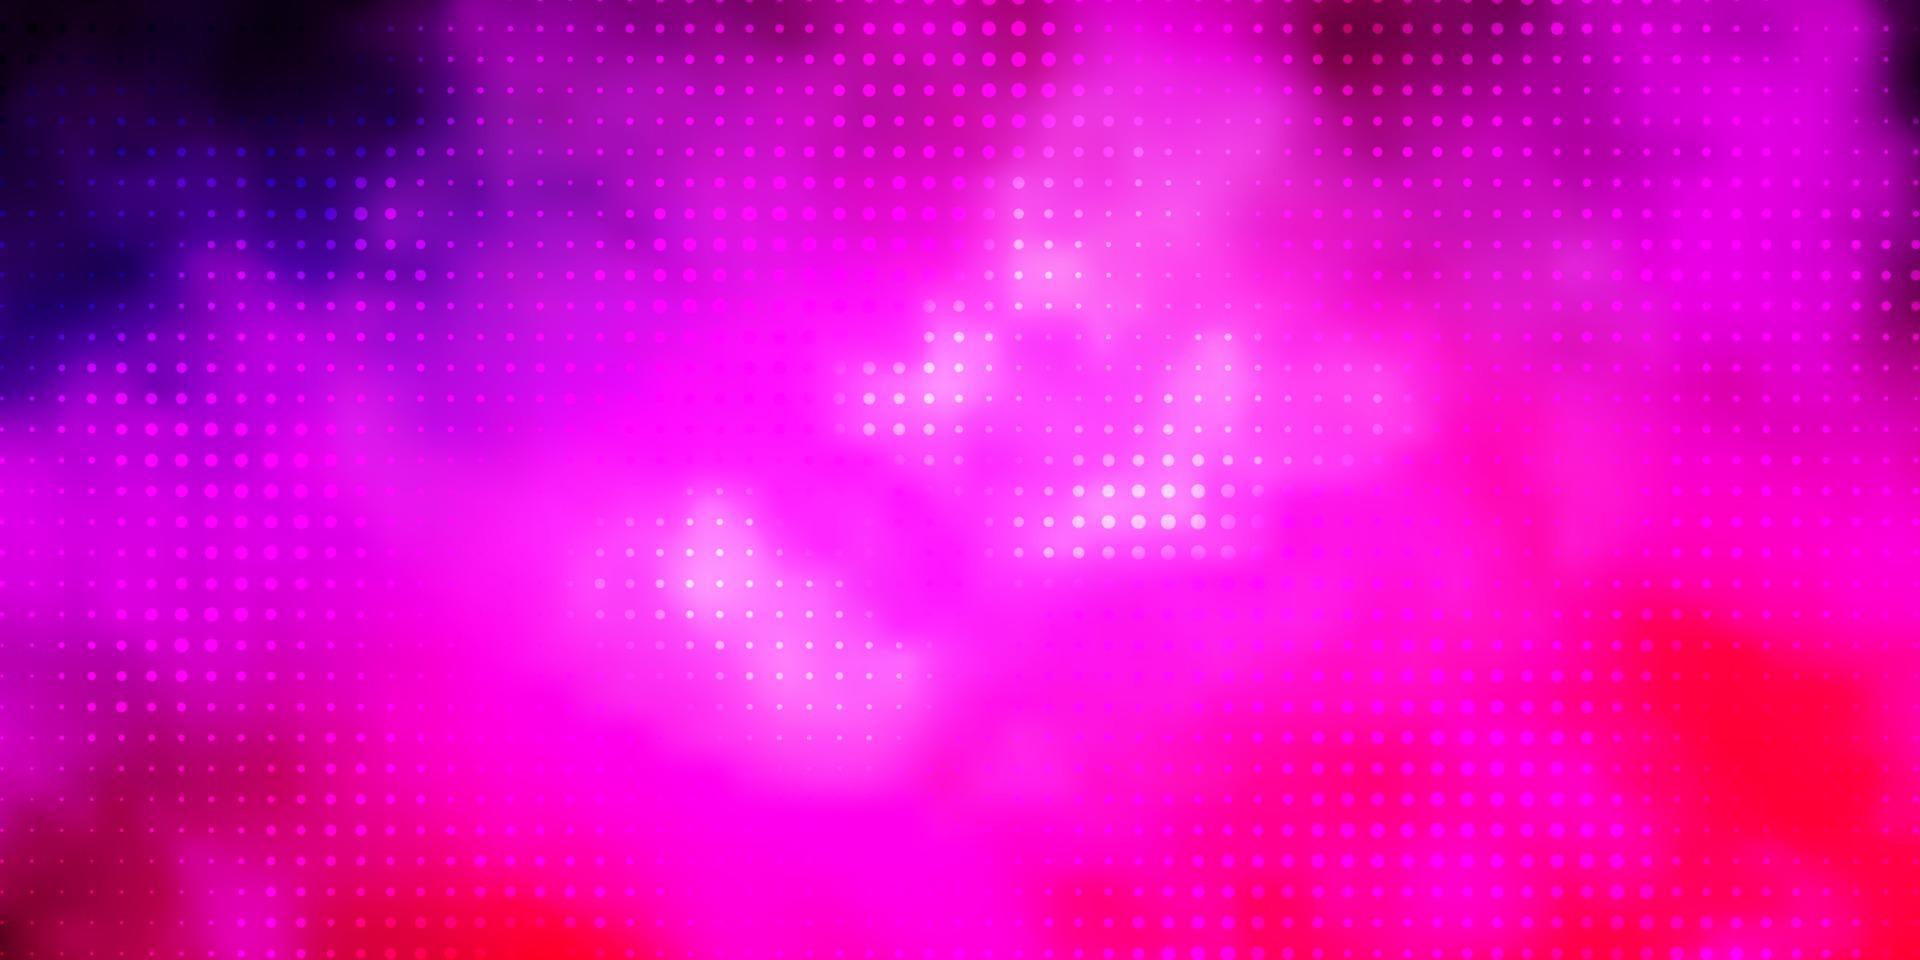 fundo vector rosa claro roxo com círculos.